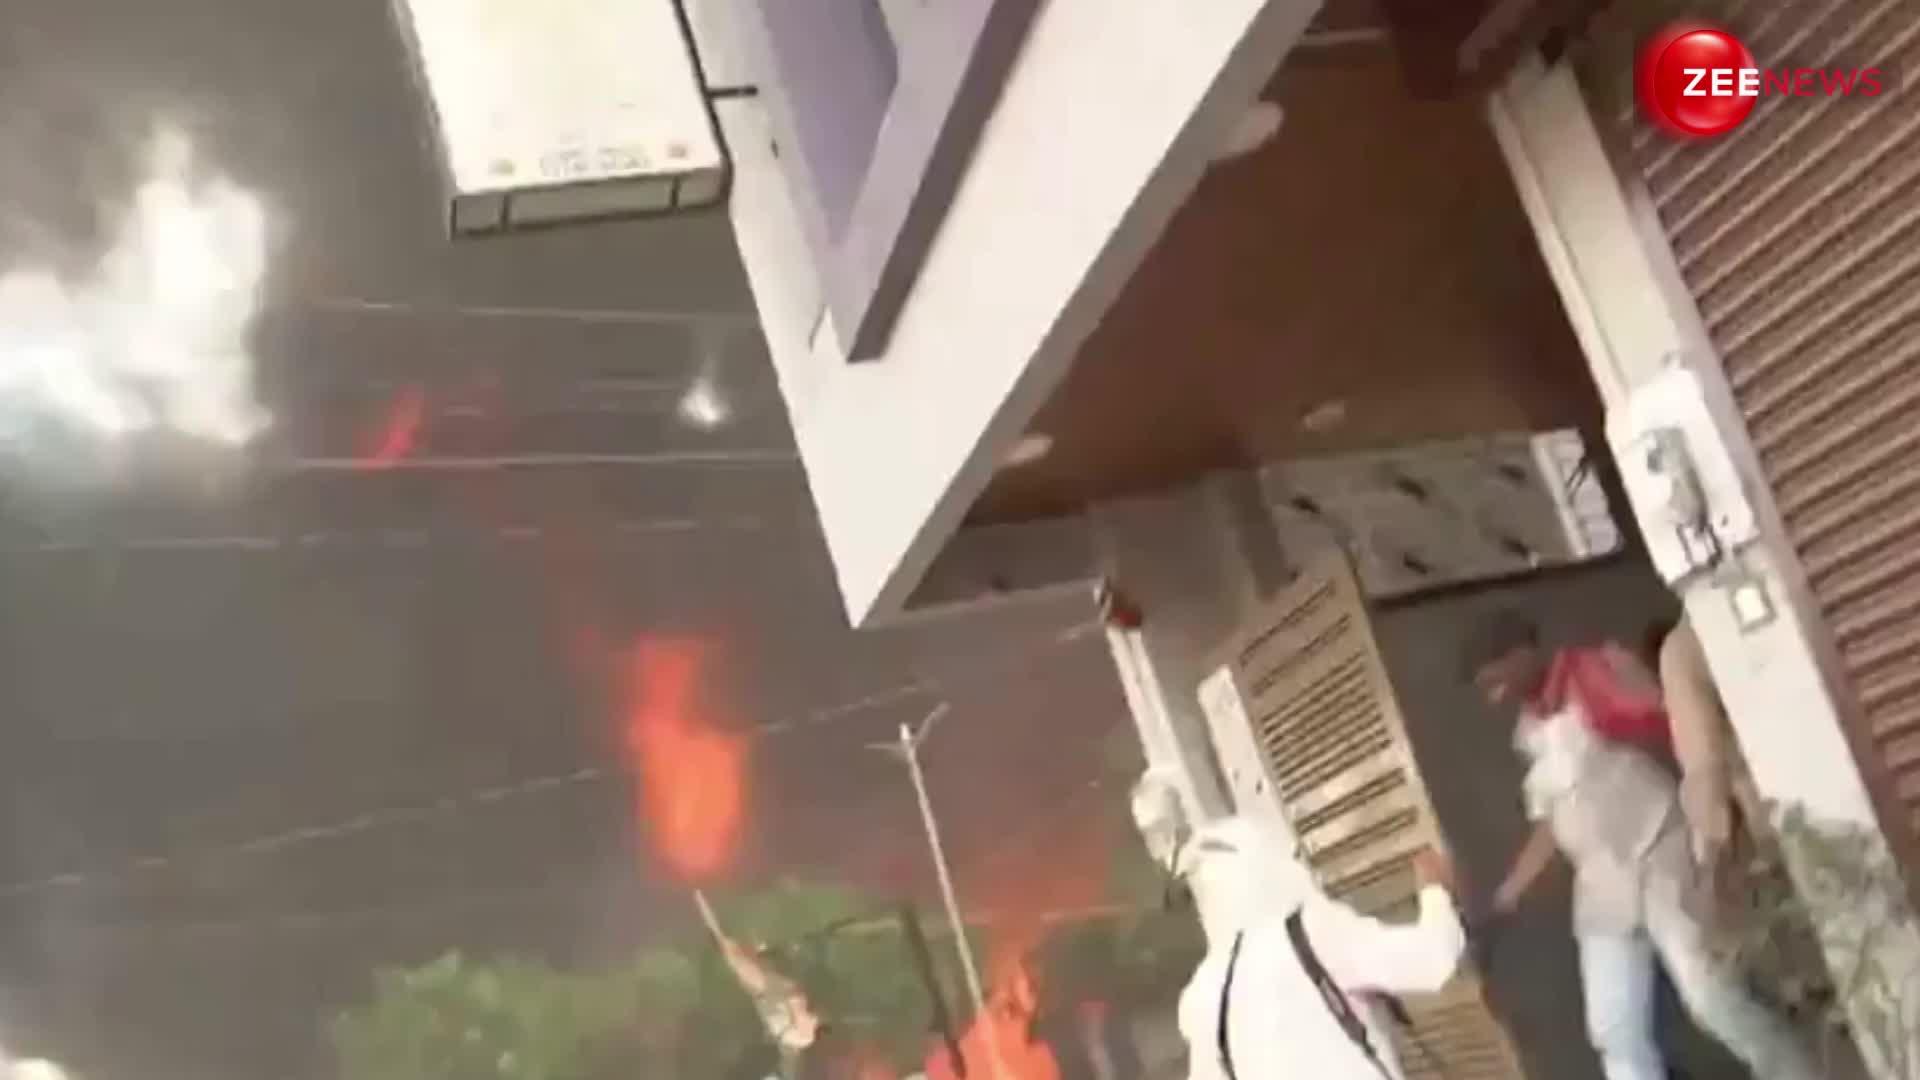 छत्तीसगढ़: रायपुर बिजली कंपनी में लगी आग, लोगों ने खाली किए मकान; मौके पर पुलिस और दमकलकर्मी मौजूद